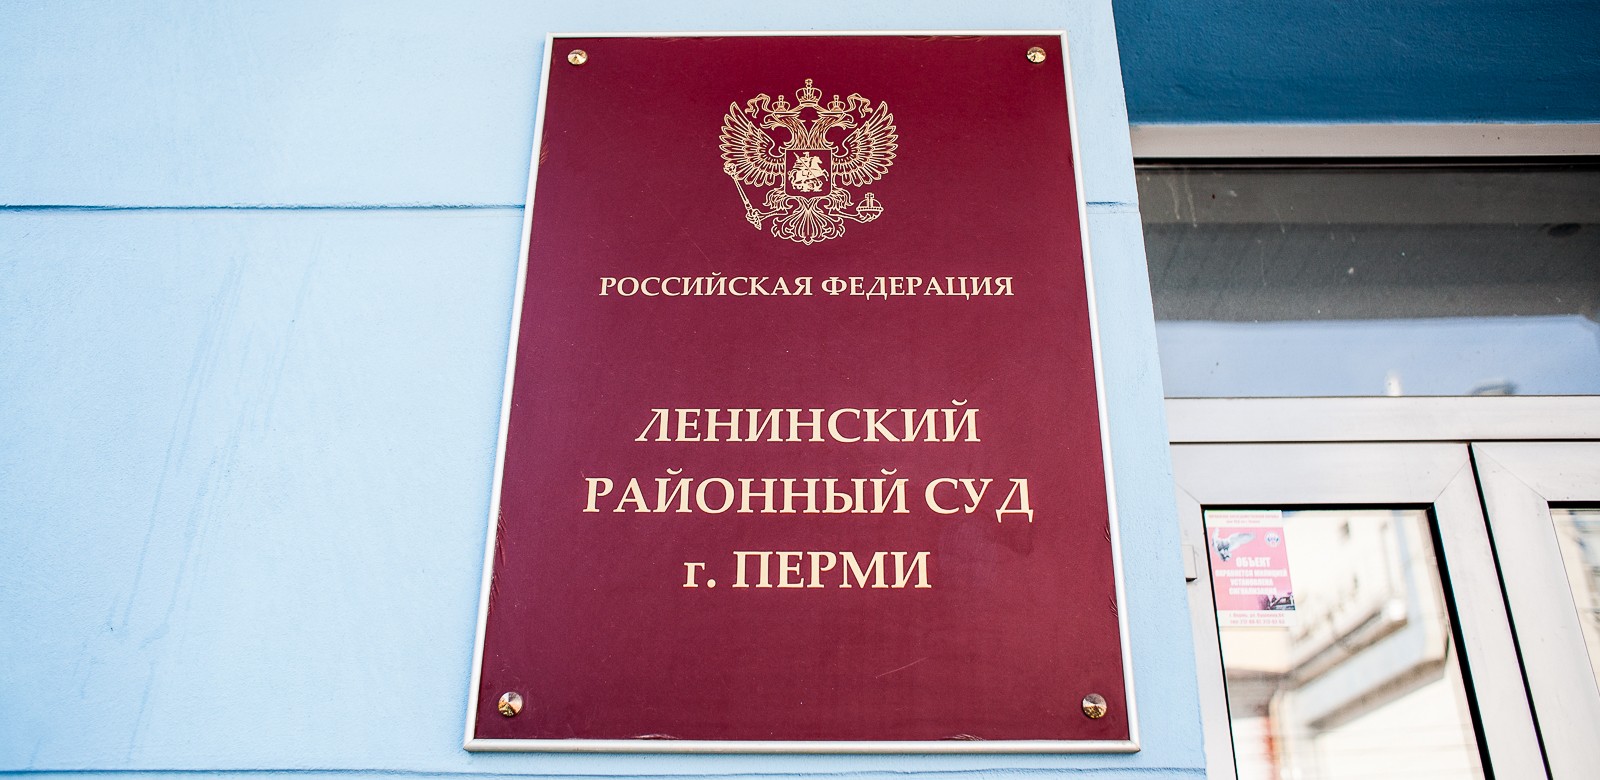 Ленинский районный суд приморского края